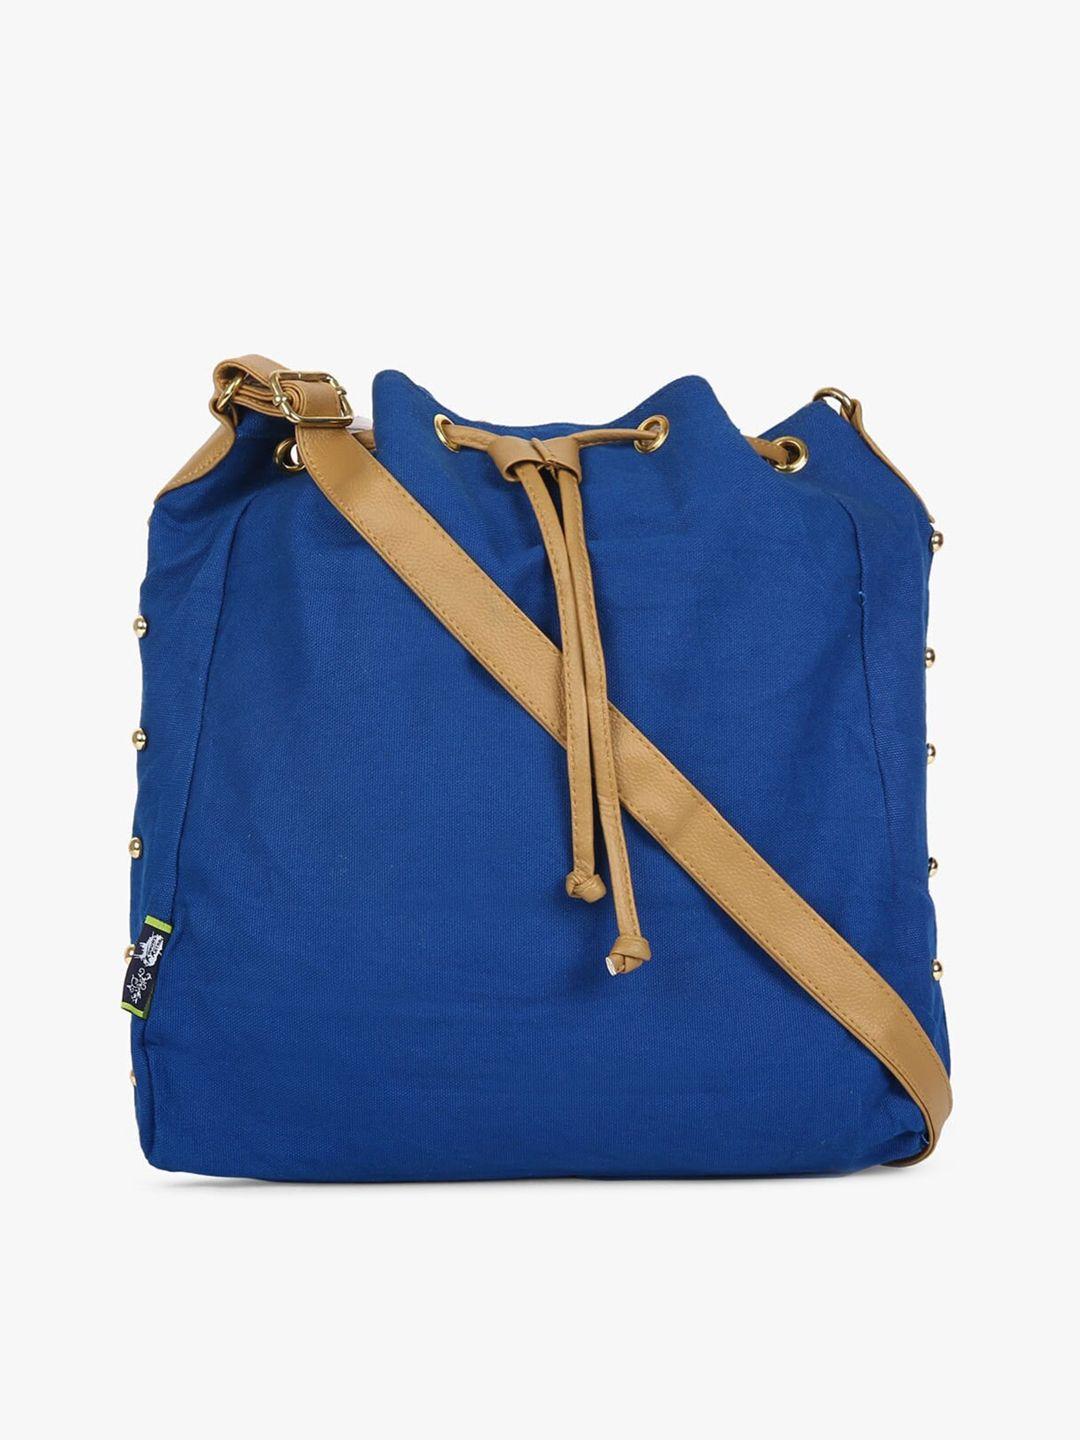 kanvas katha blue bucket sling bag with tasselled